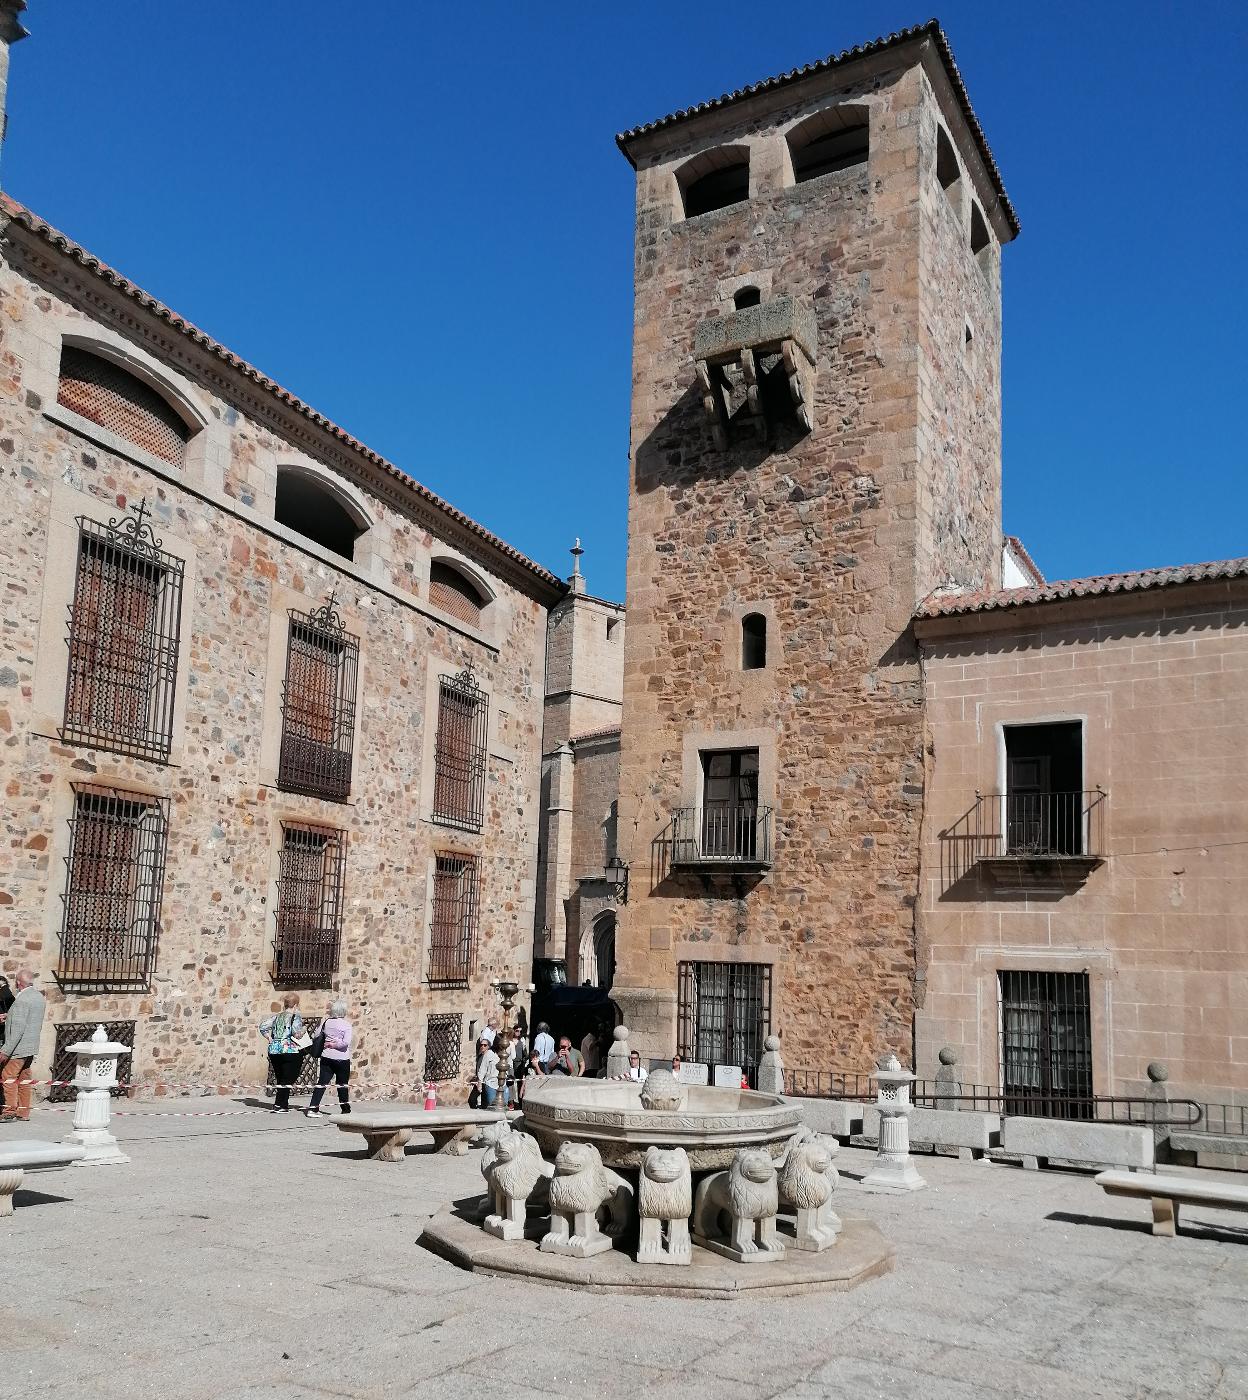 Juego de Tronos' lleva la Fuente de los Leones de la Alhambra al corazón  medieval de Cáceres | Ideal